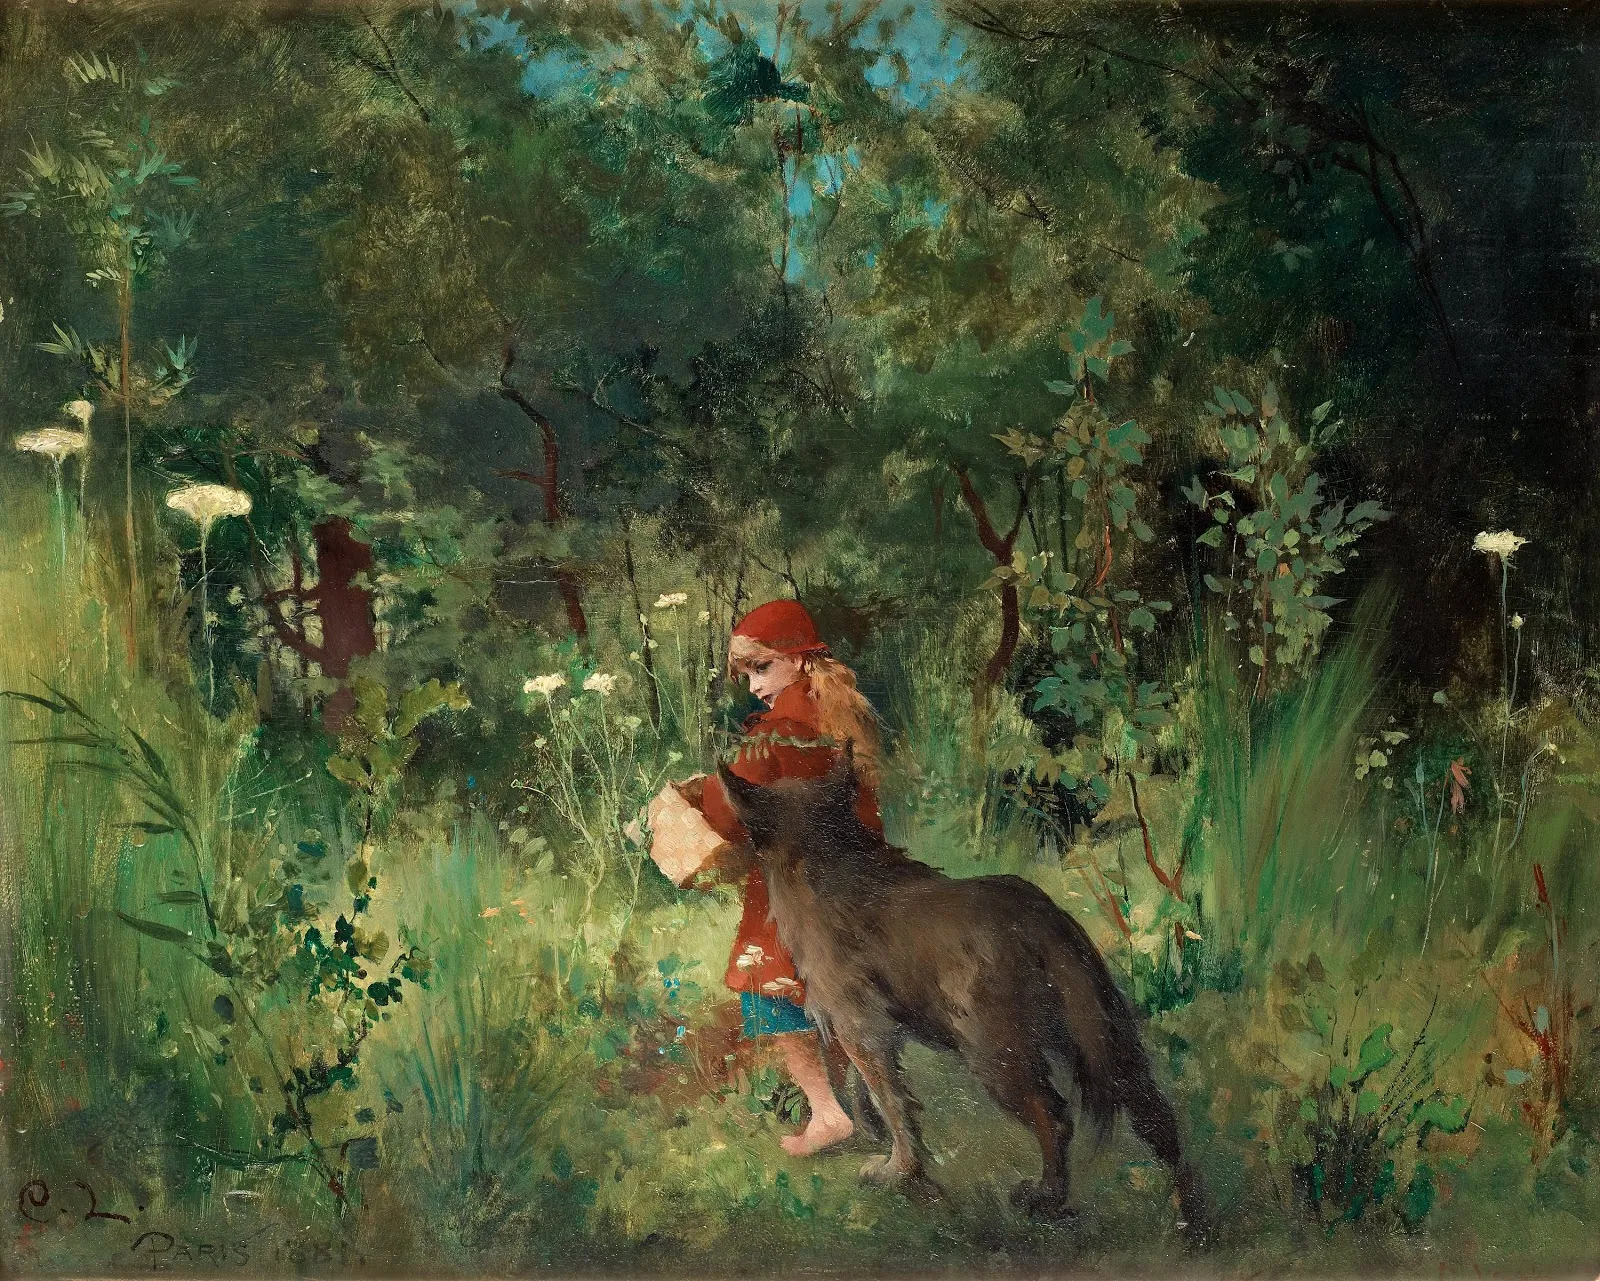 Storytelling-bloggen: I vilken sorts skog möter Rödluvan vargen, egentligen?